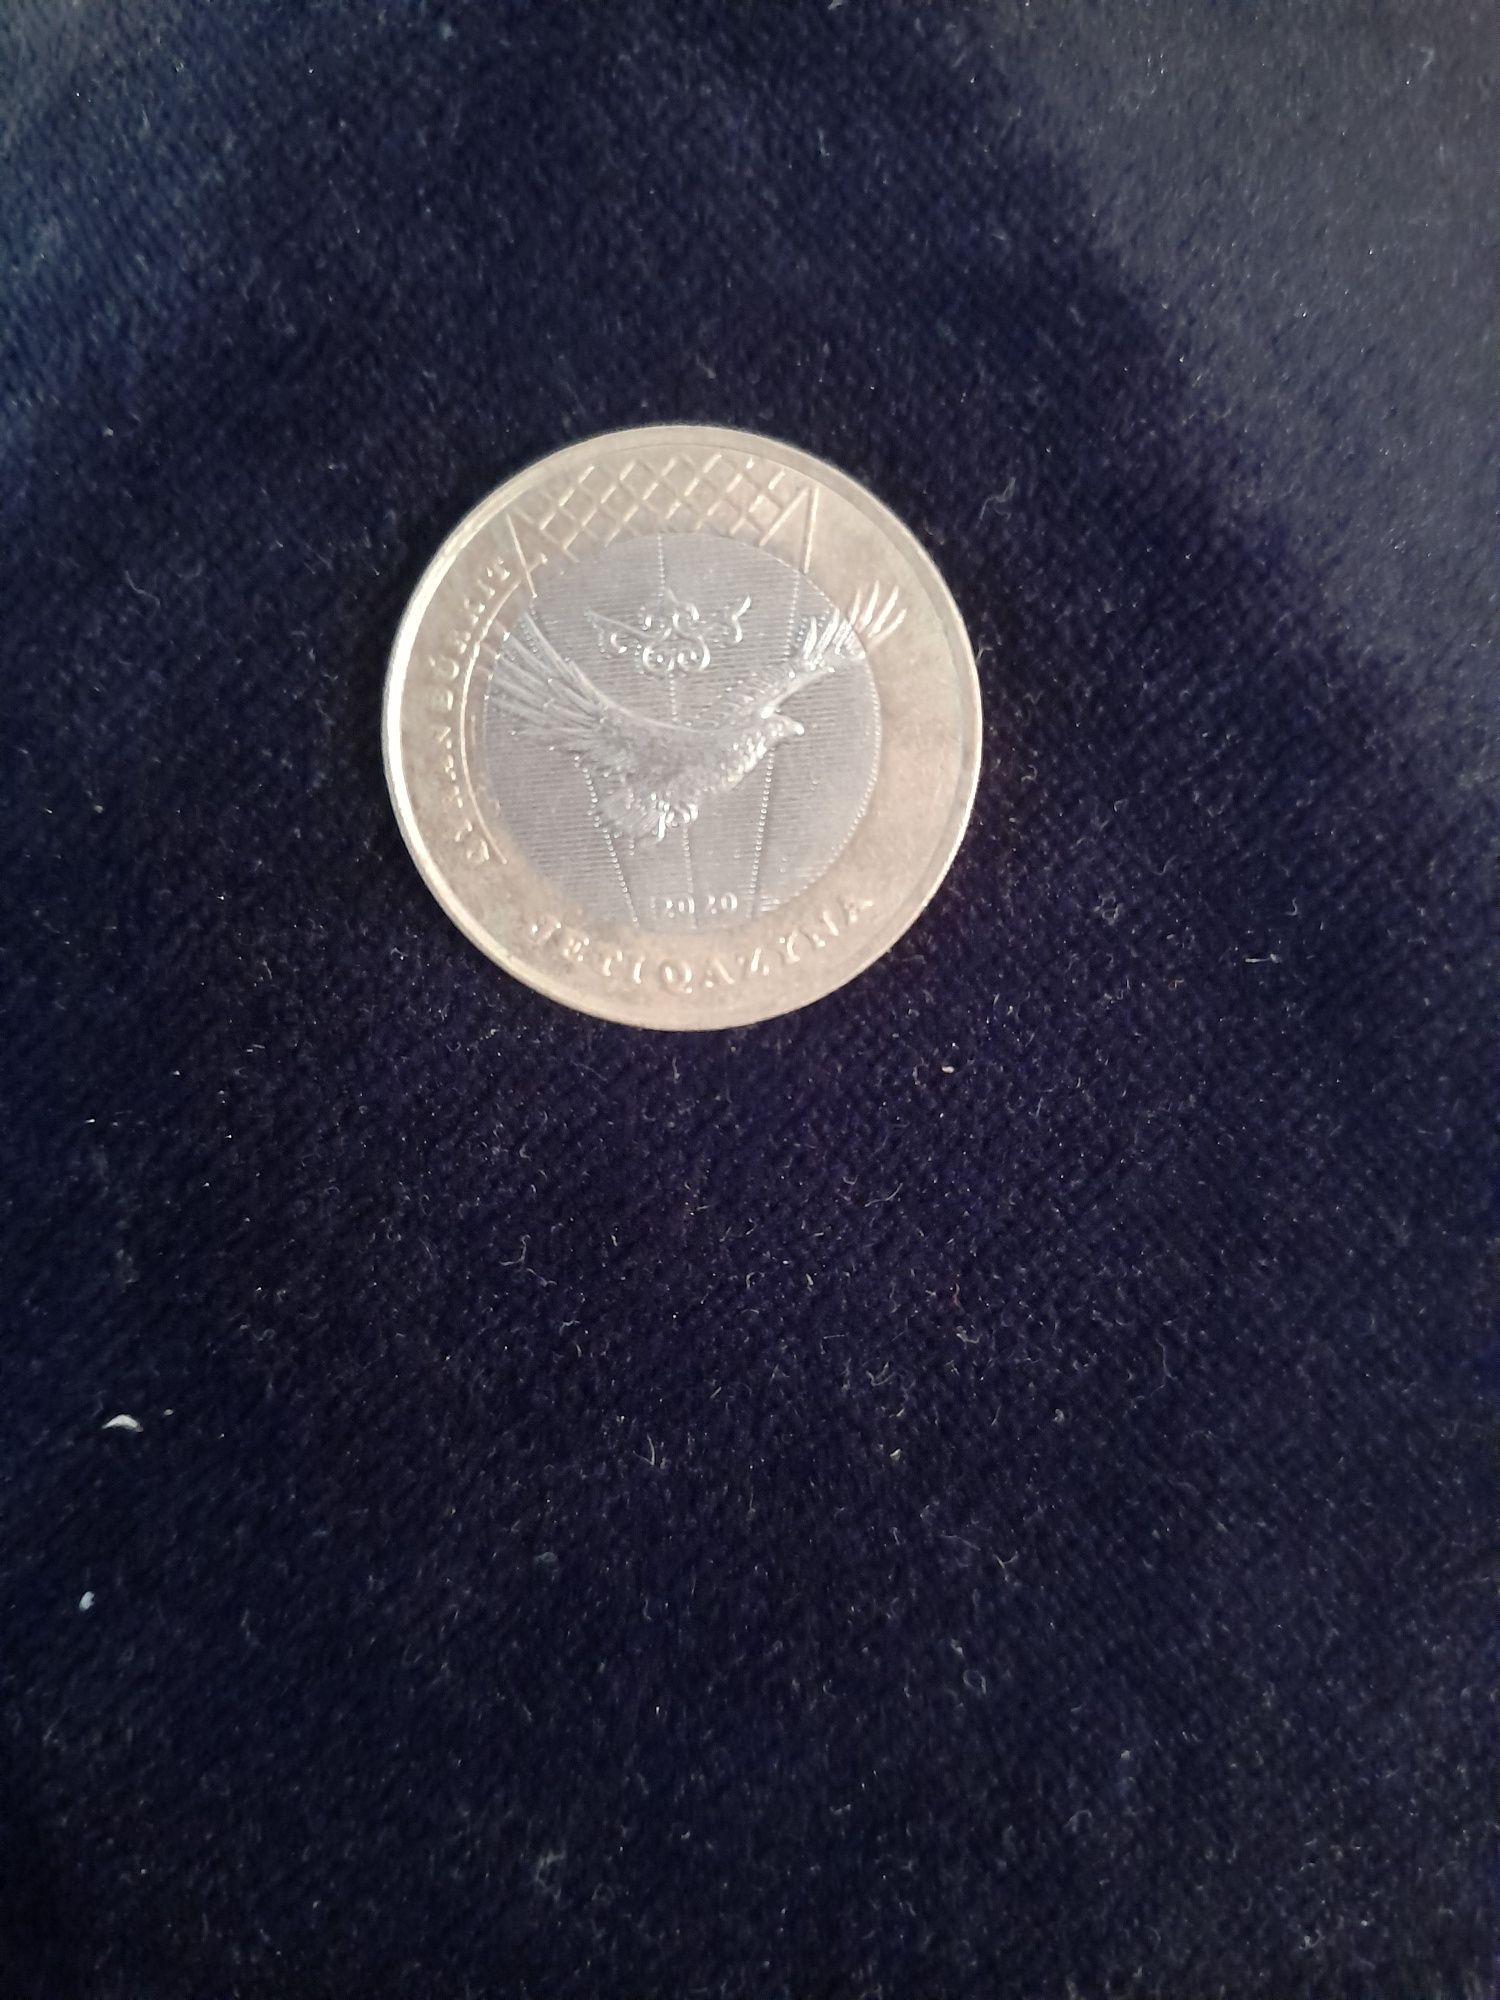 Монетка номиналом 100 тенге из коллекции "Jeti Qazyna"